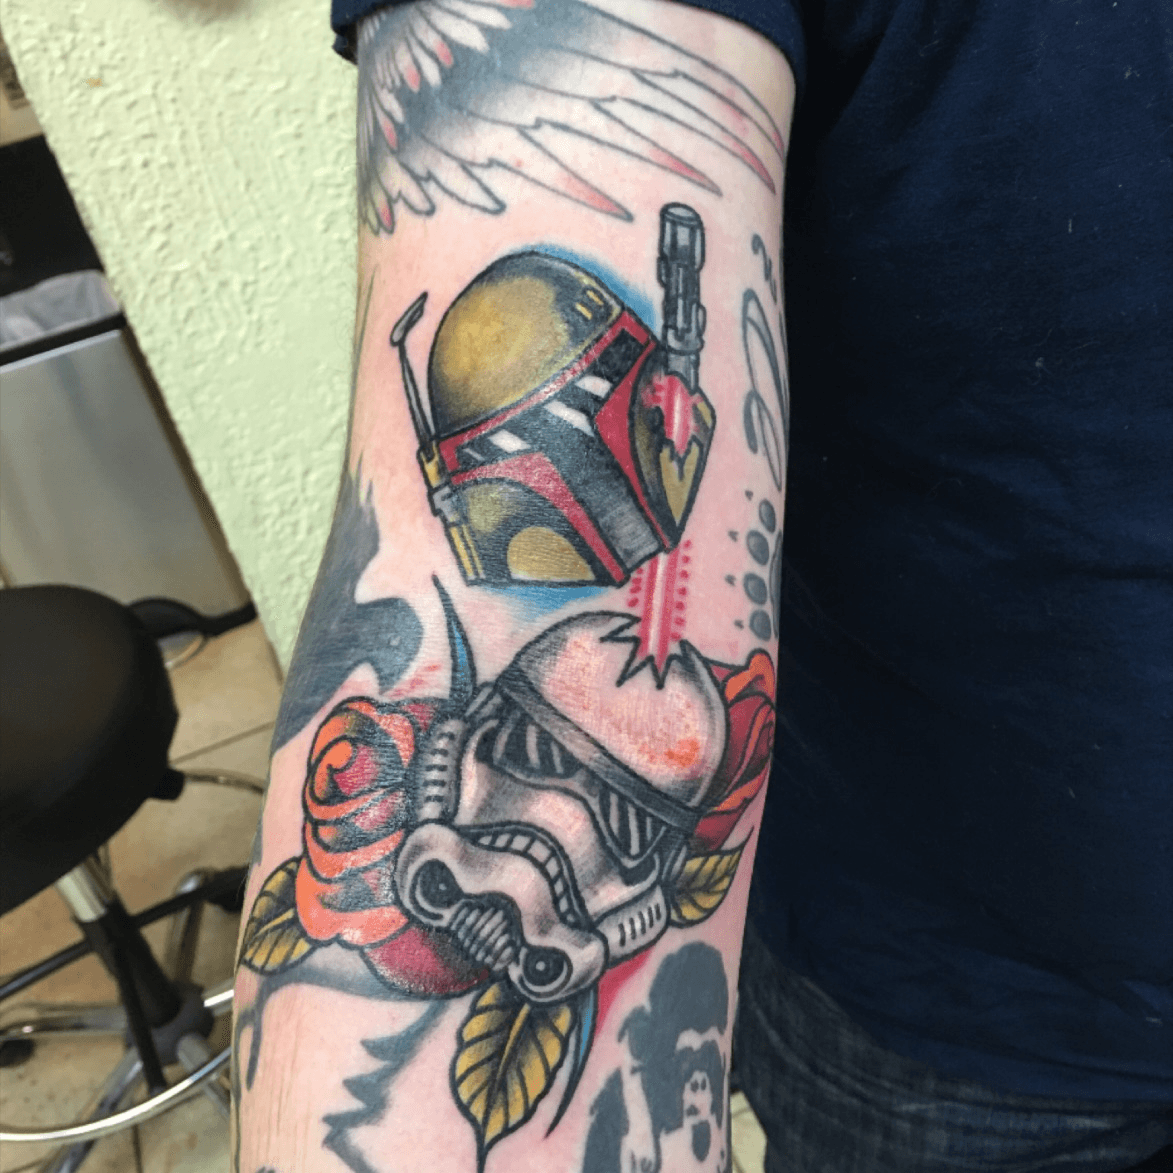 Tattoo uploaded by Tattoodo • Star Wars tattoo by Alex Zampirri